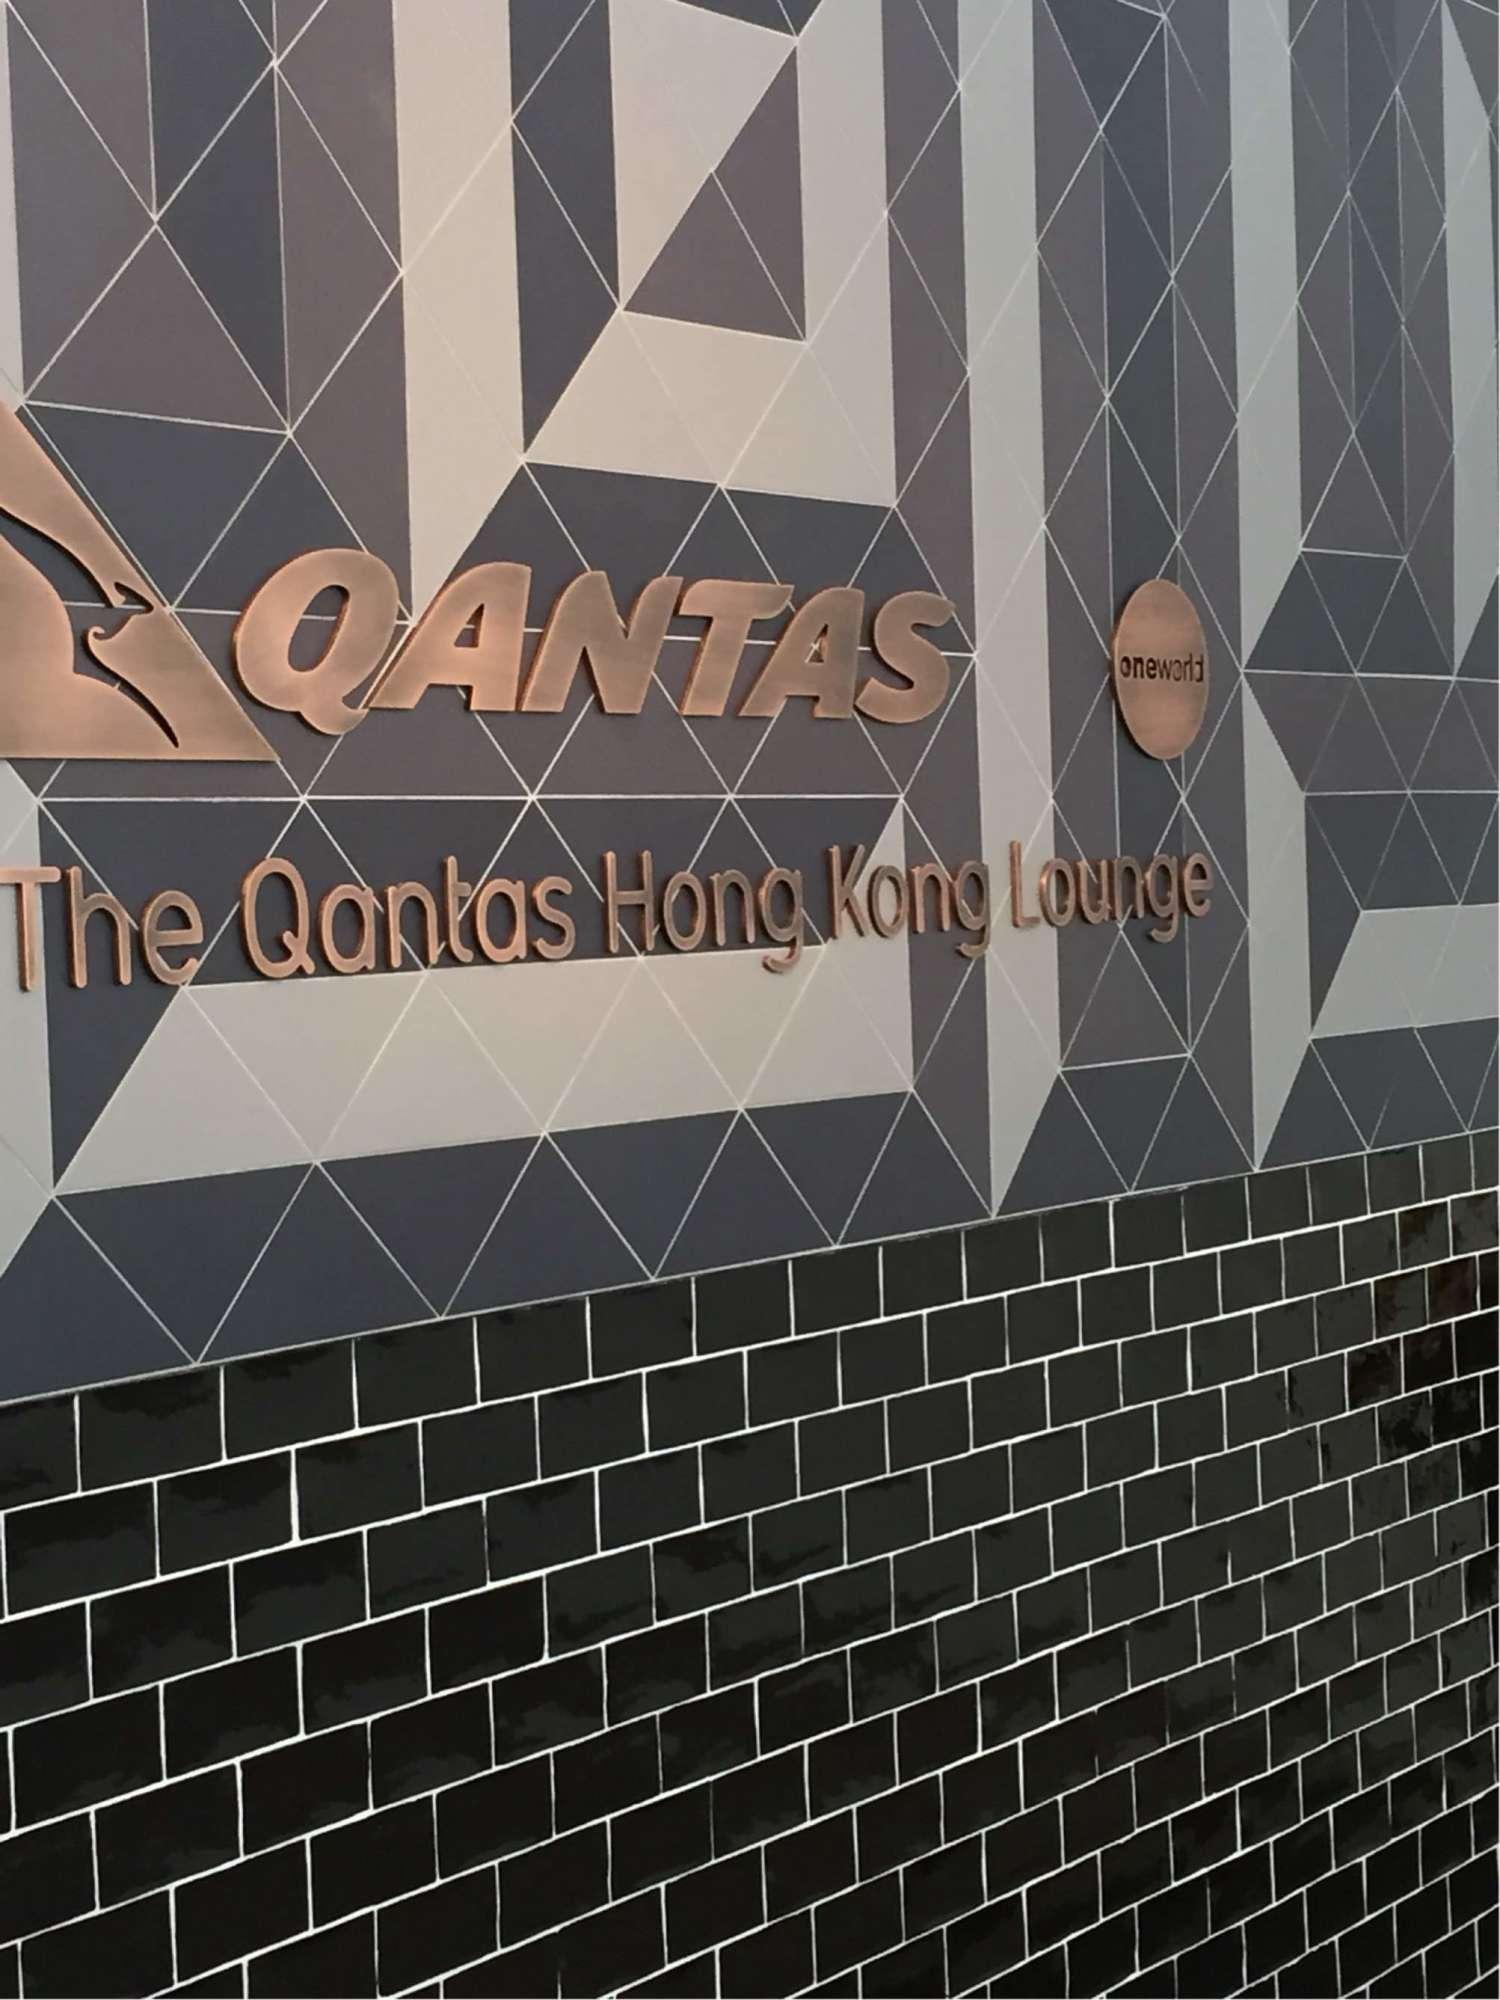 The Qantas Hong Kong Lounge image 14 of 99